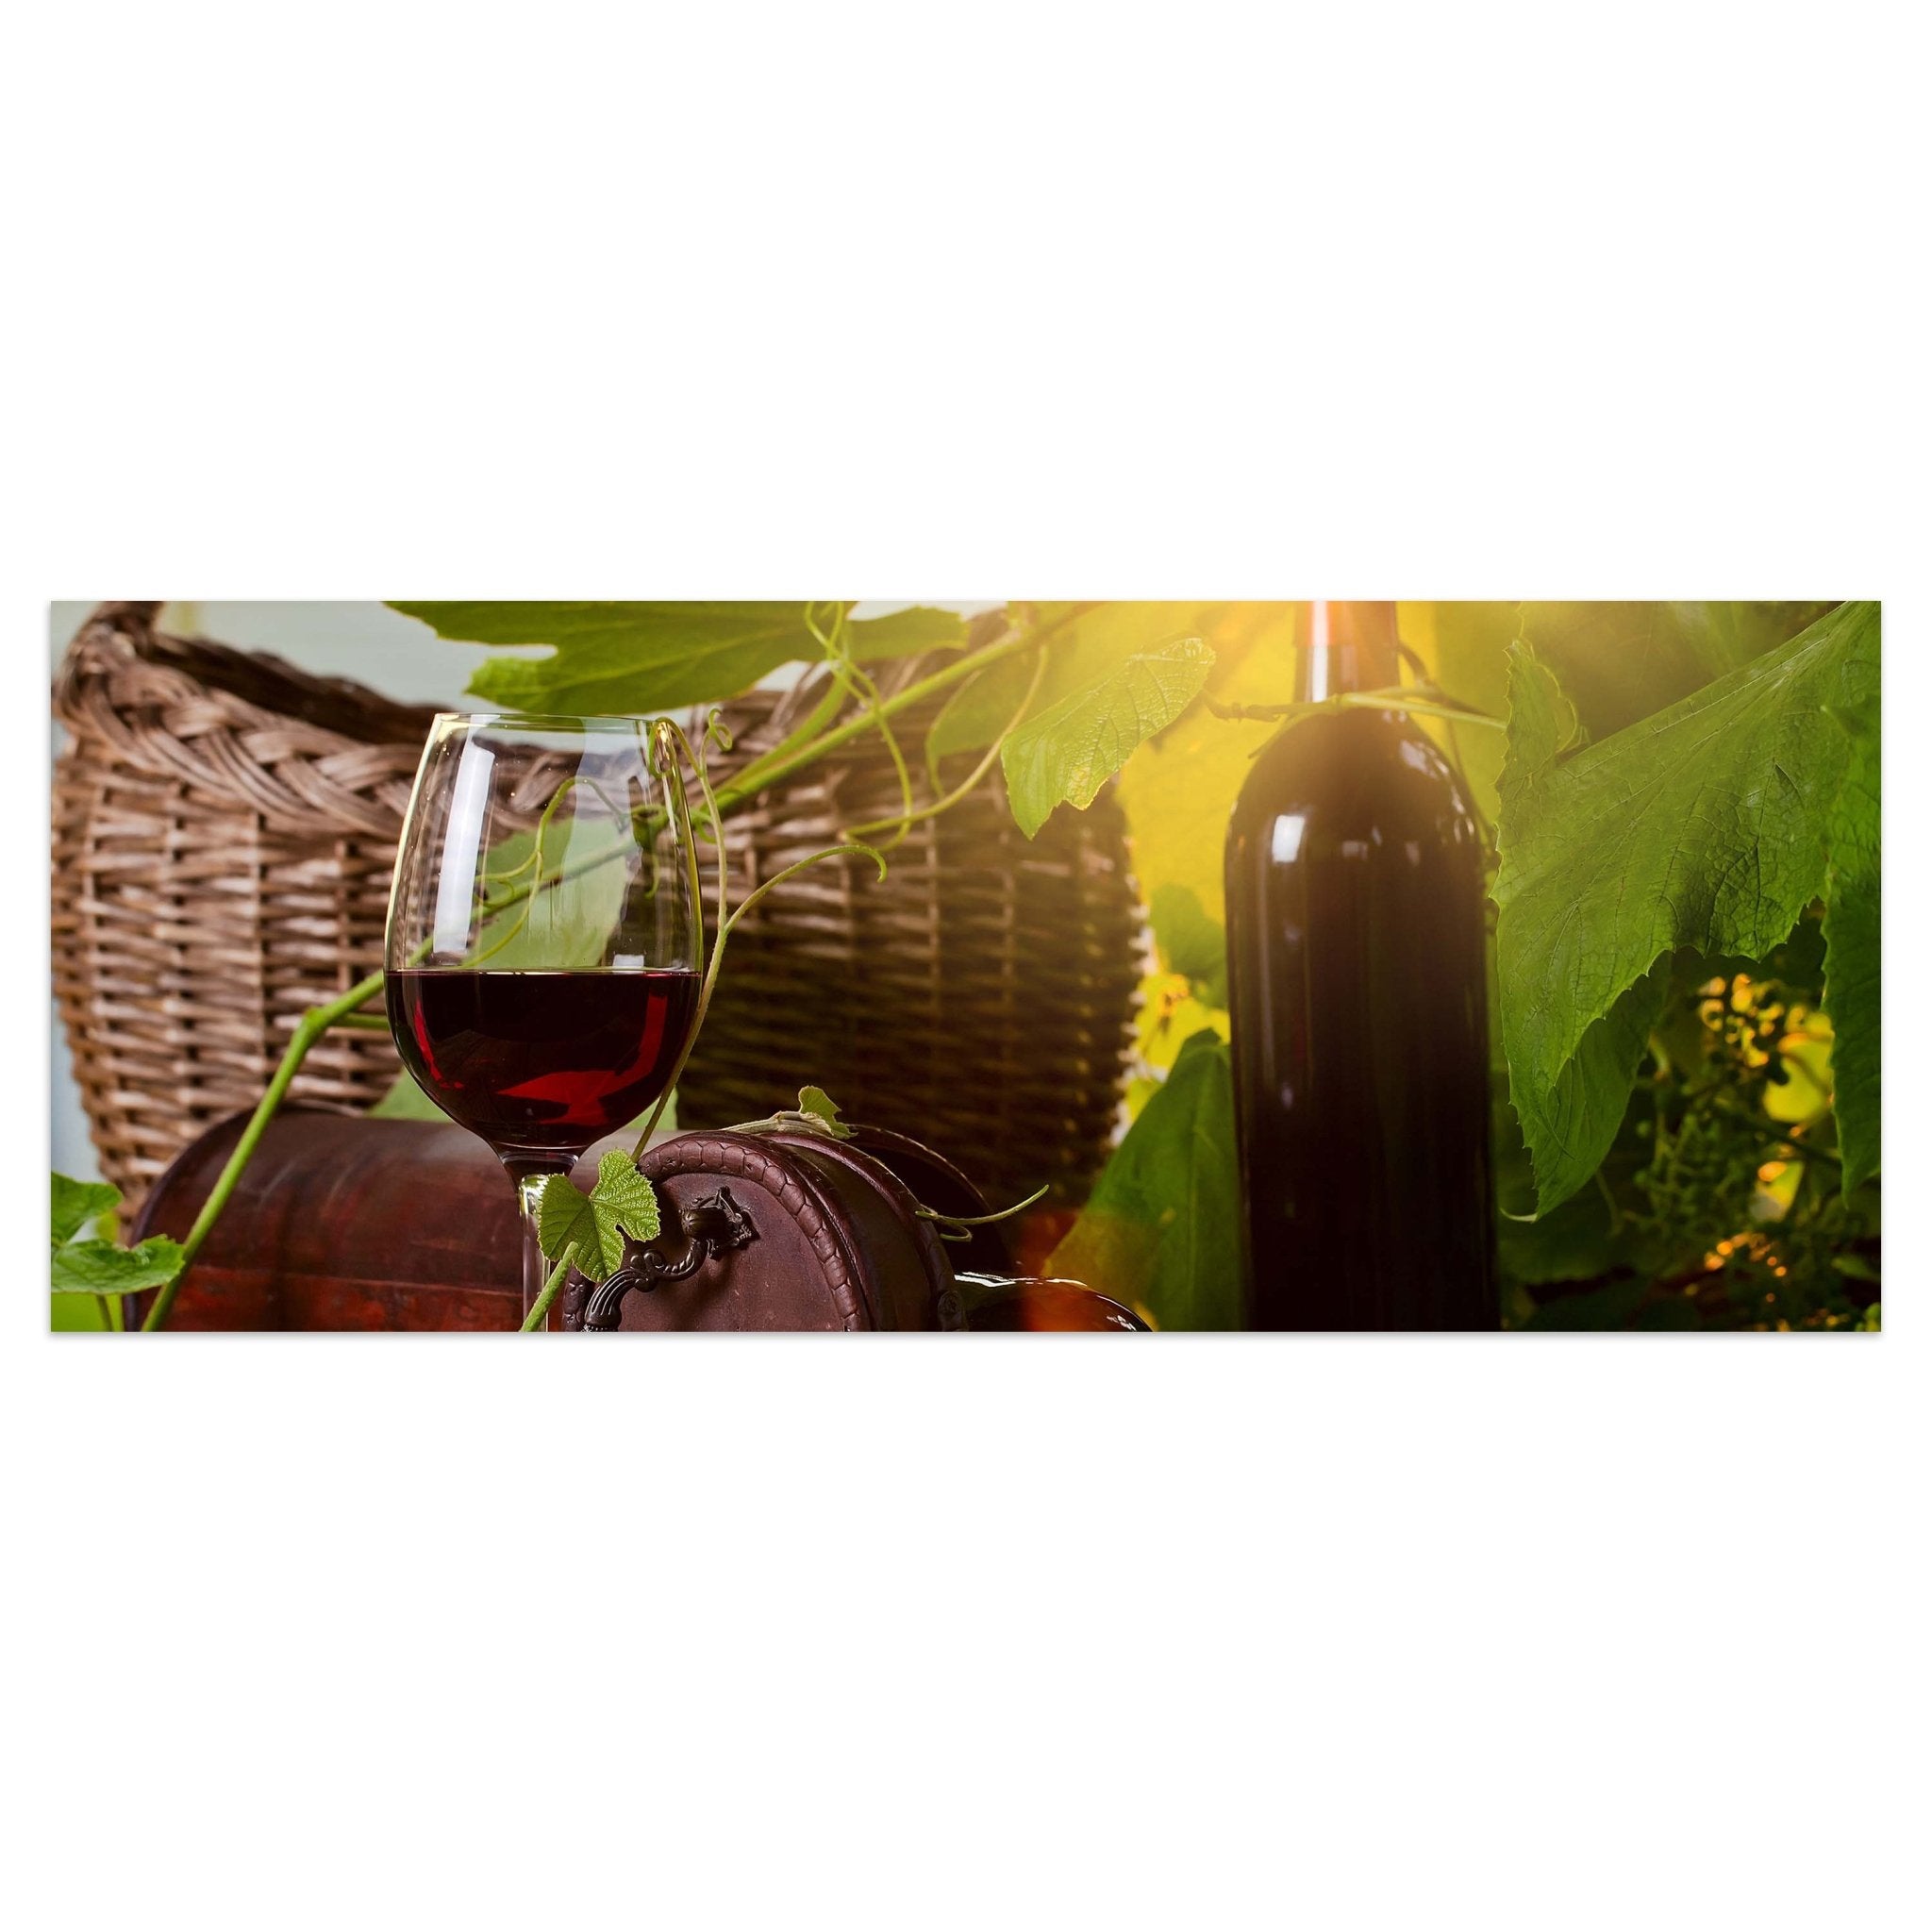 Leinwandbild Flasche und Glas mit Rotwein M0831 kaufen - Bild 1